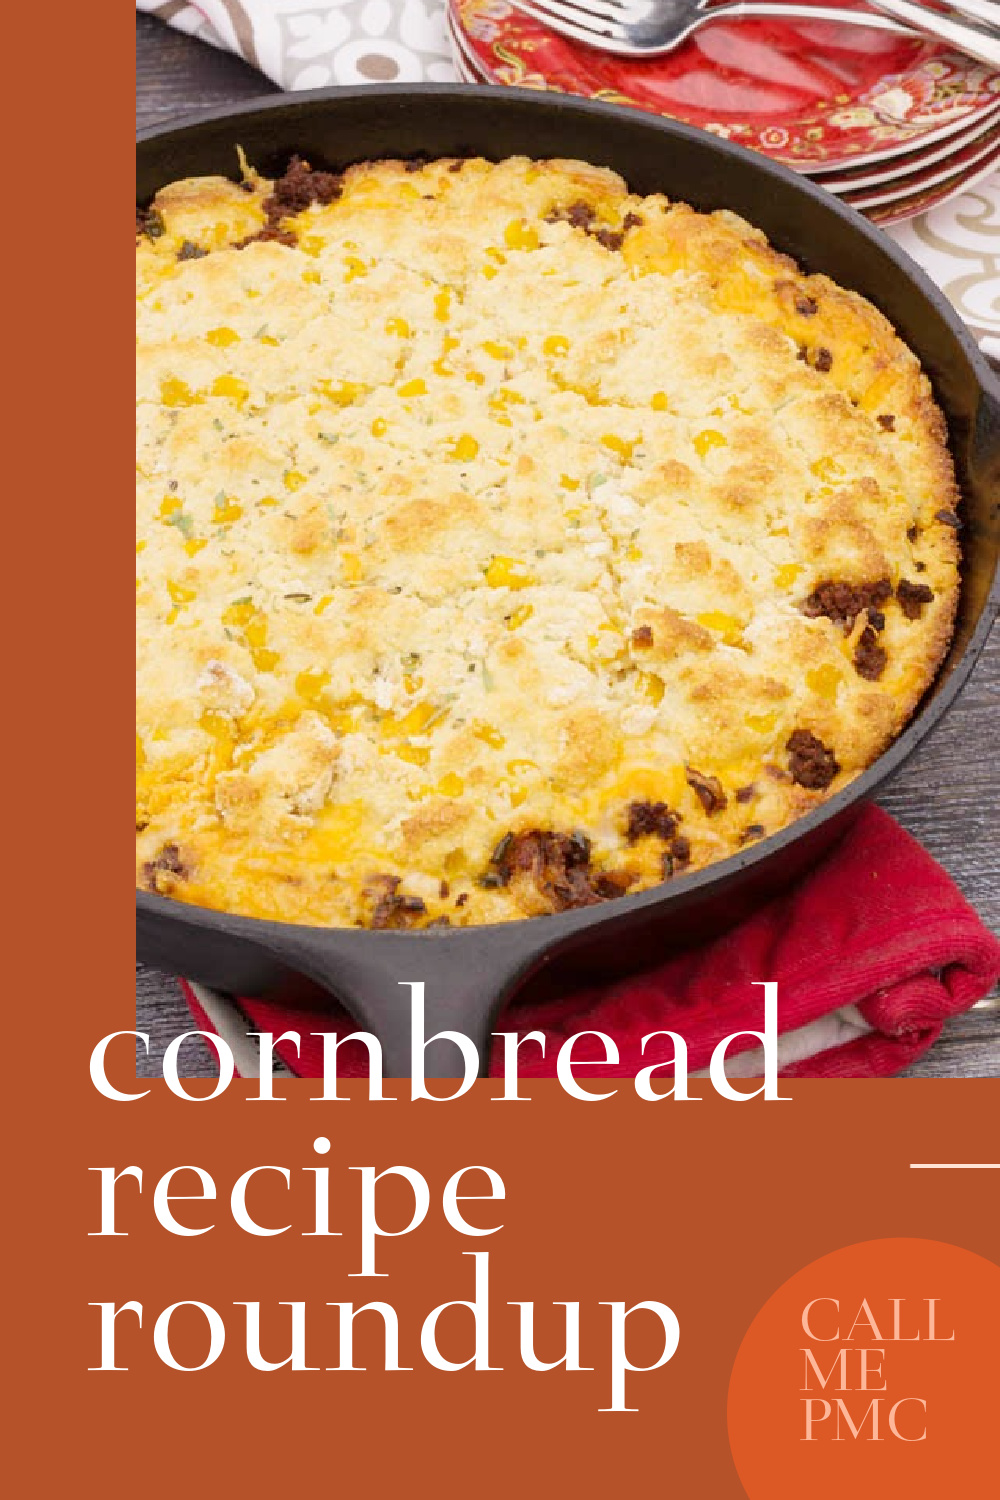 Delicious Cornbread Recipes